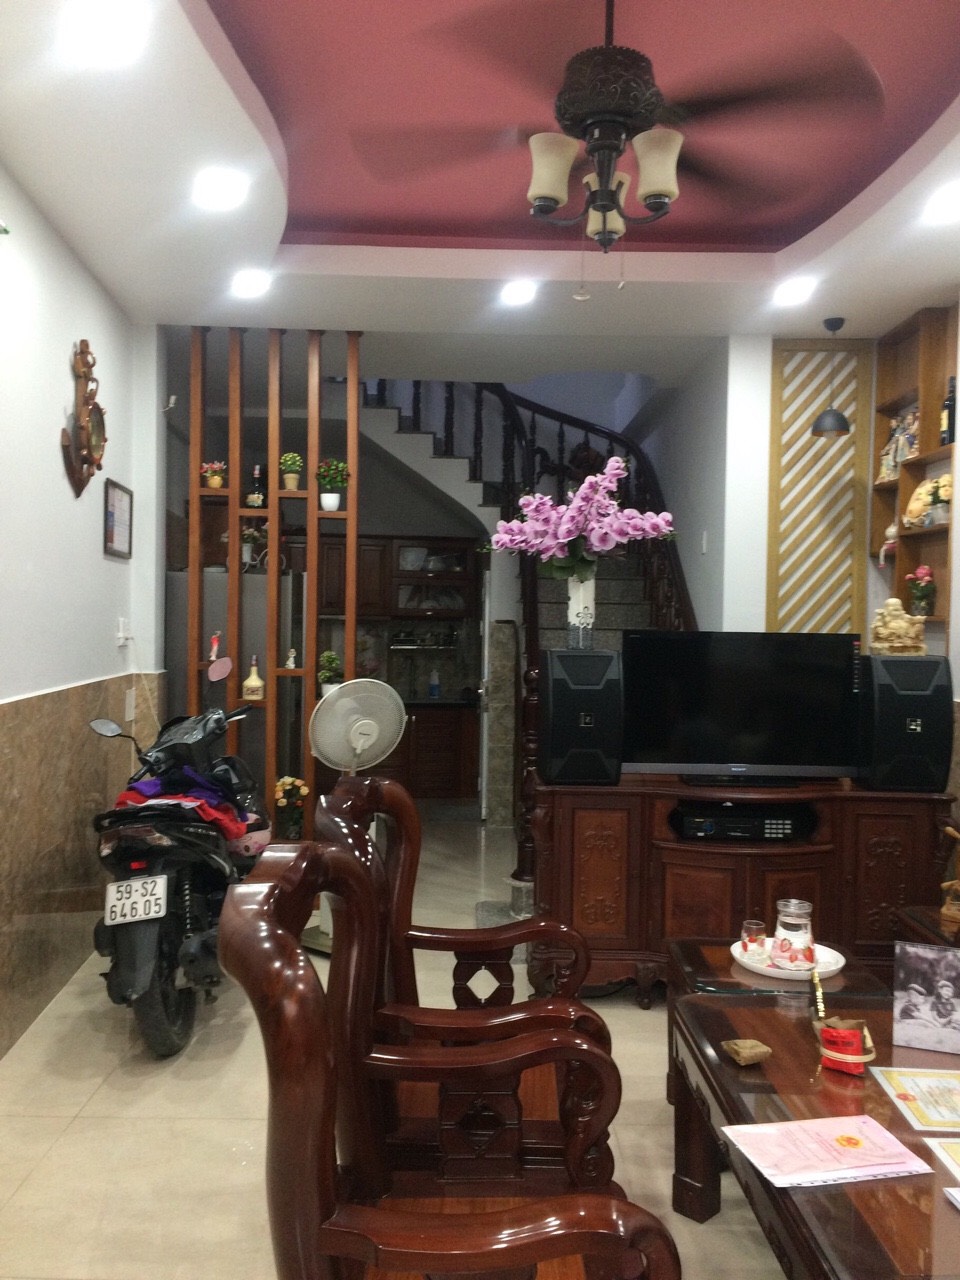 Cần bán nhà 3 lầu HXH đường số 8,Trần Não, P. Bình An, Q2 (Vừa qua cầu Sài Gòn )